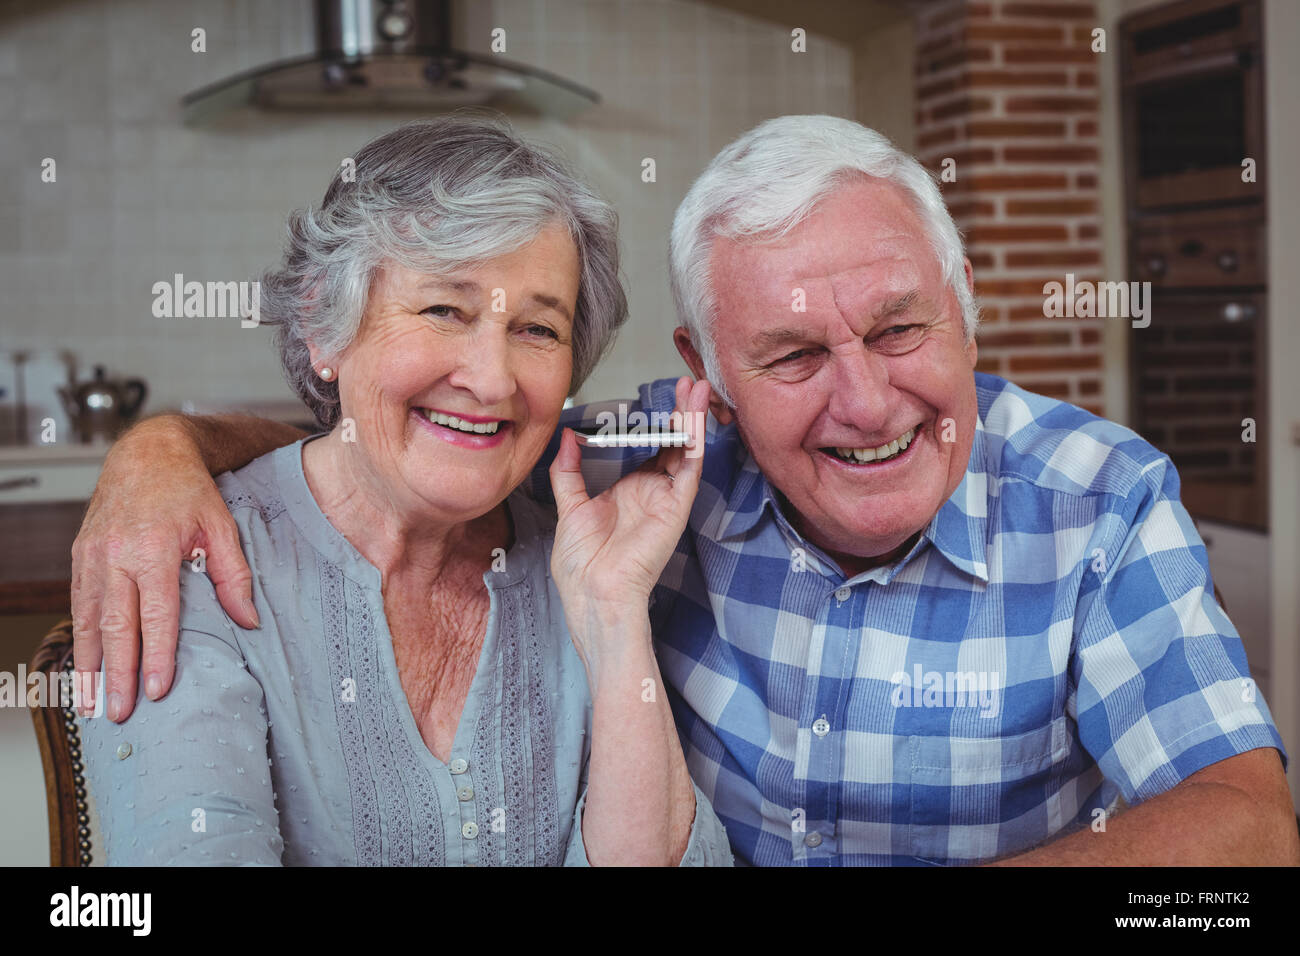 Senior couple listening music in kitchen Stock Photo